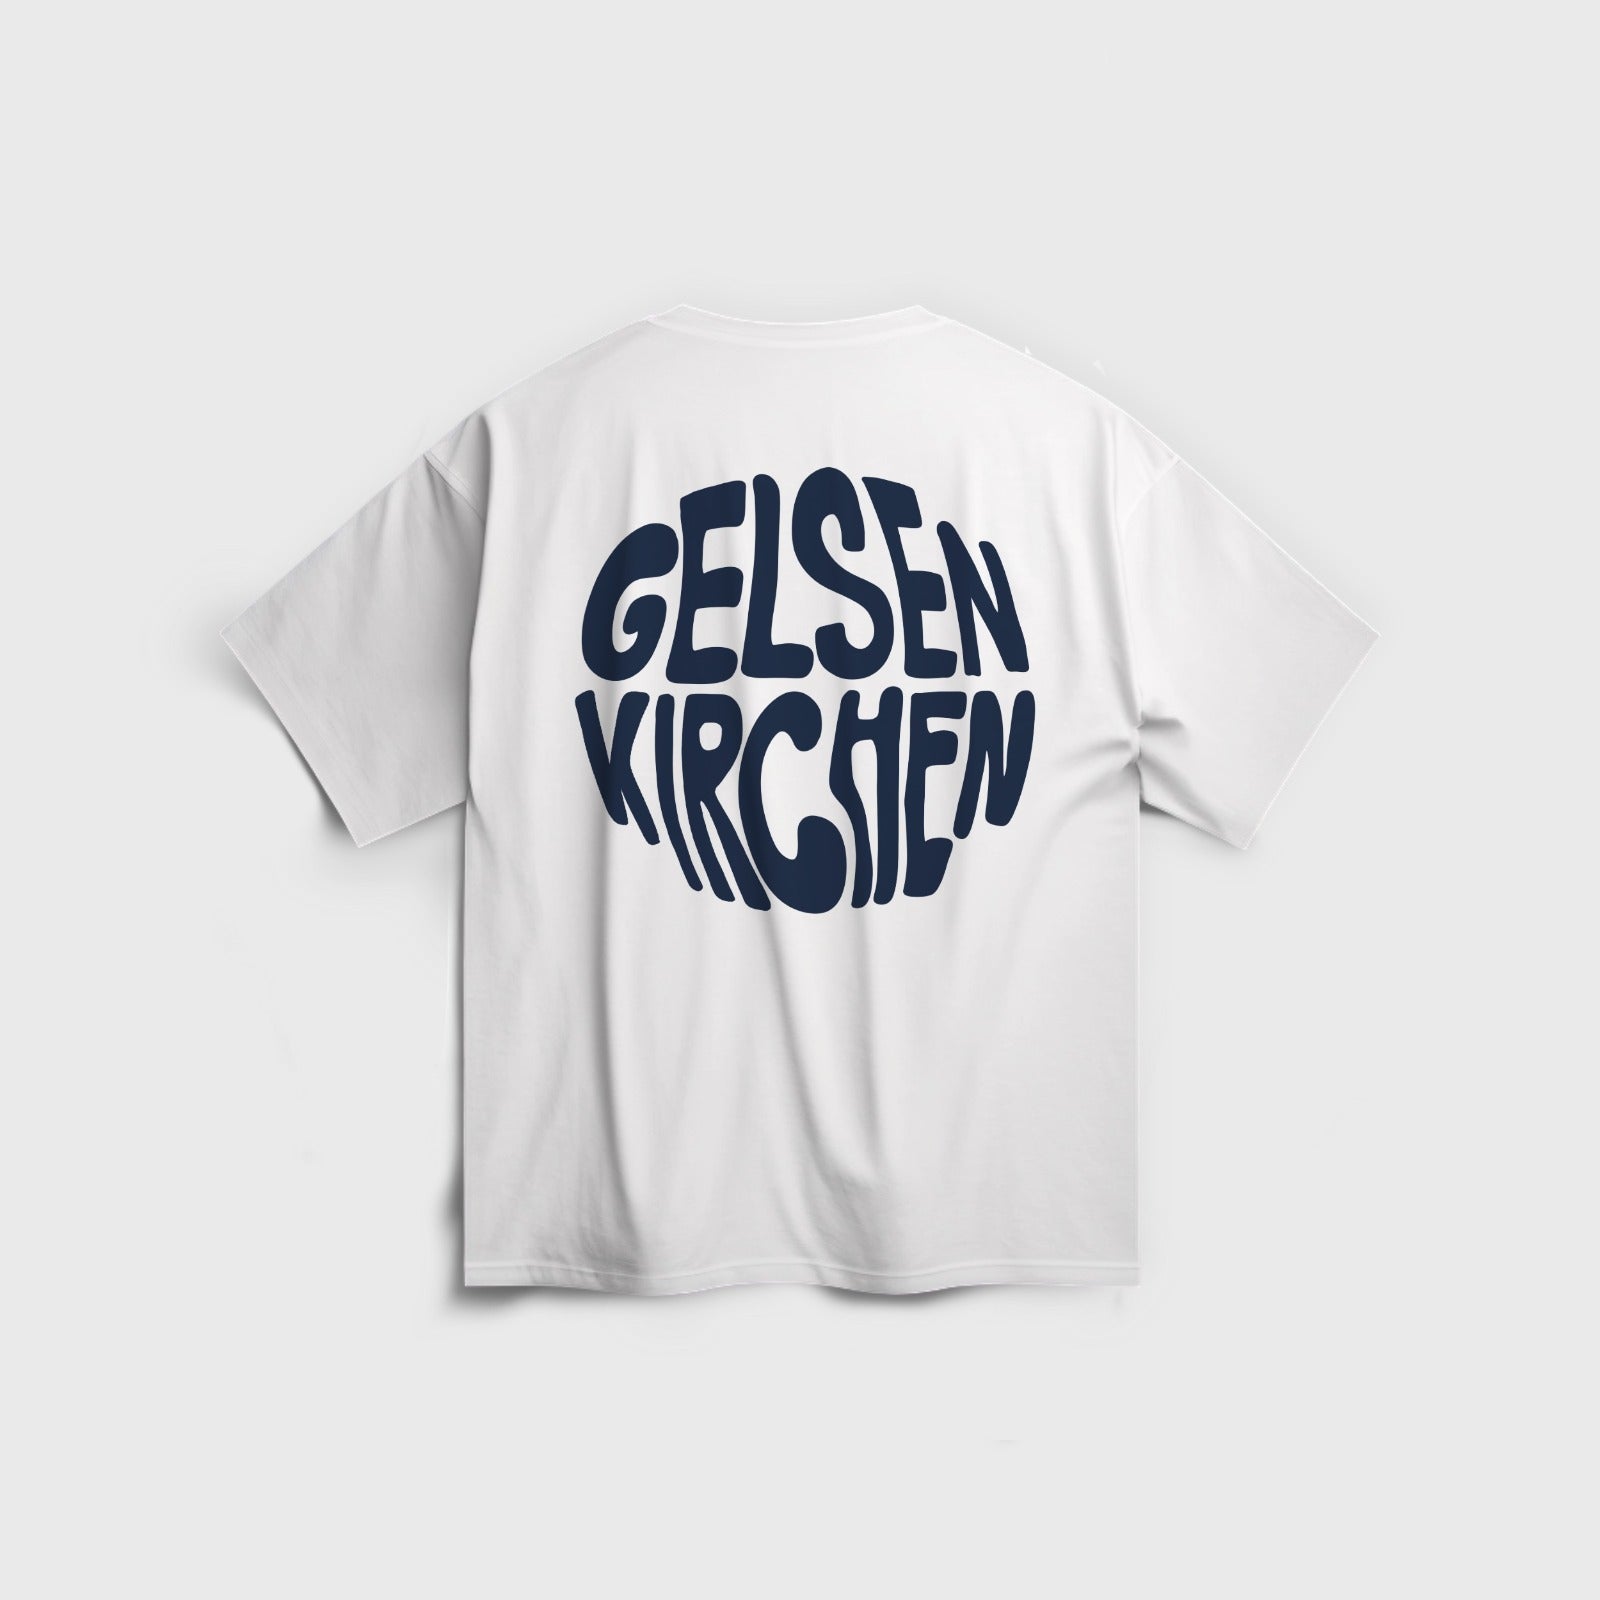 Gelsen Kirchen - Oversize T-Shirt